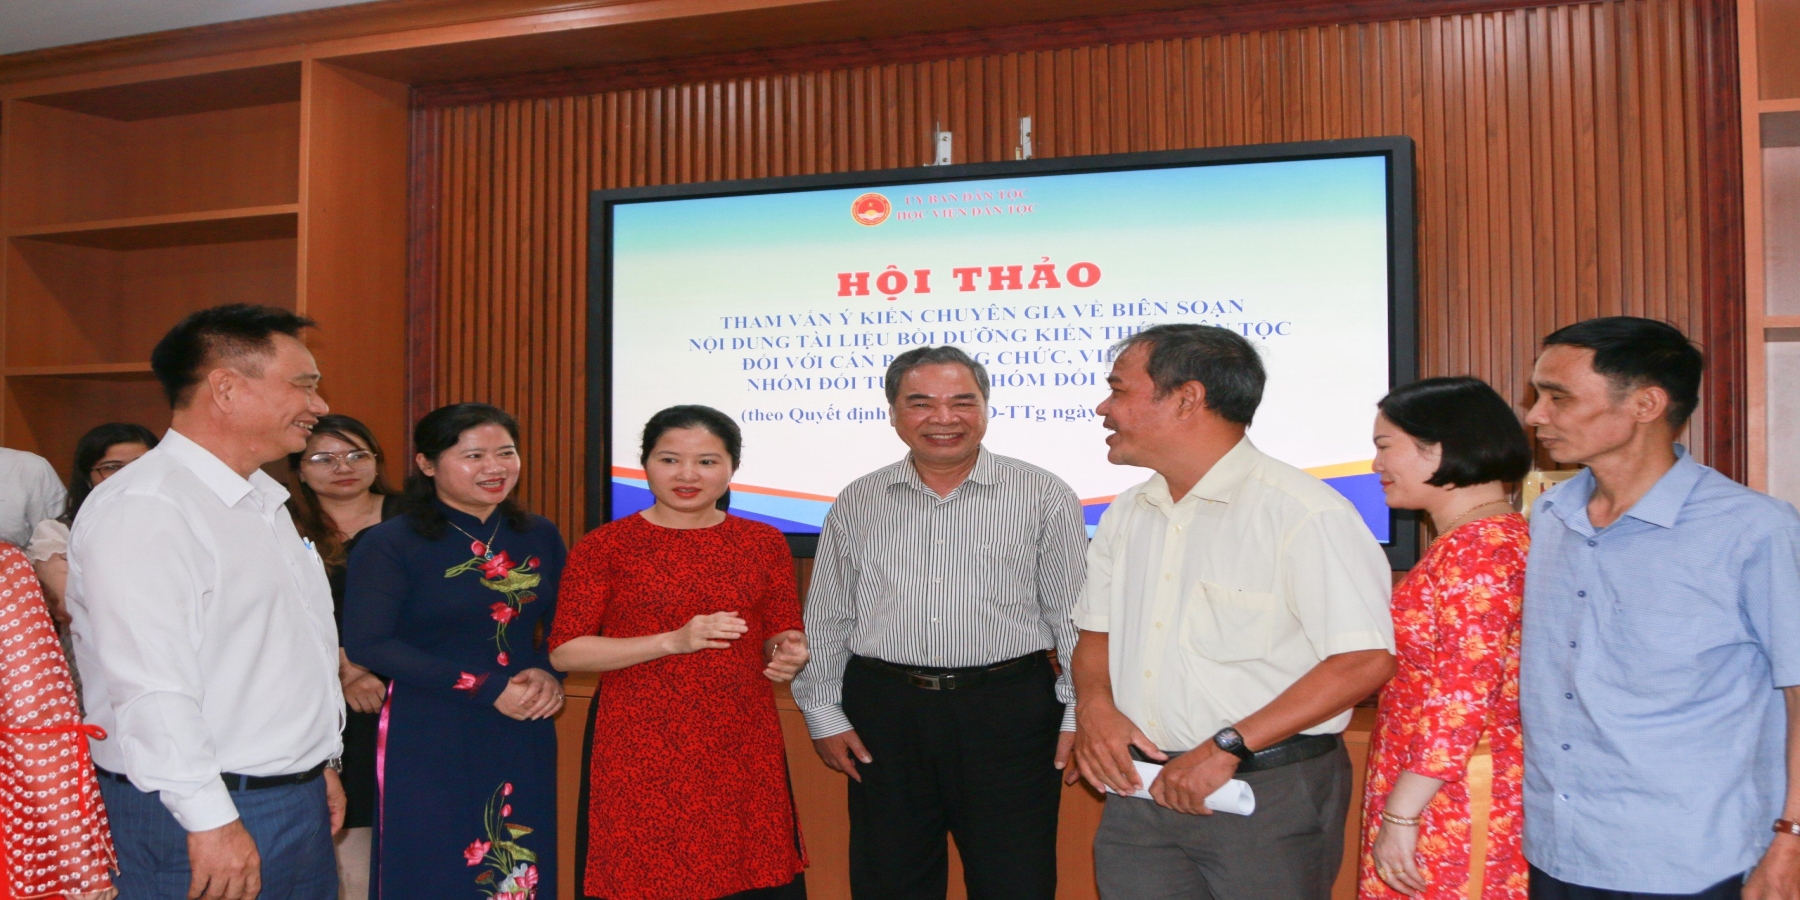 Trường Đại học Kiên Giang tham gia góp ý Tài liệu bồi dưỡng kiến thức dân tộc theo Quyết định số 1719/QĐ-TTg